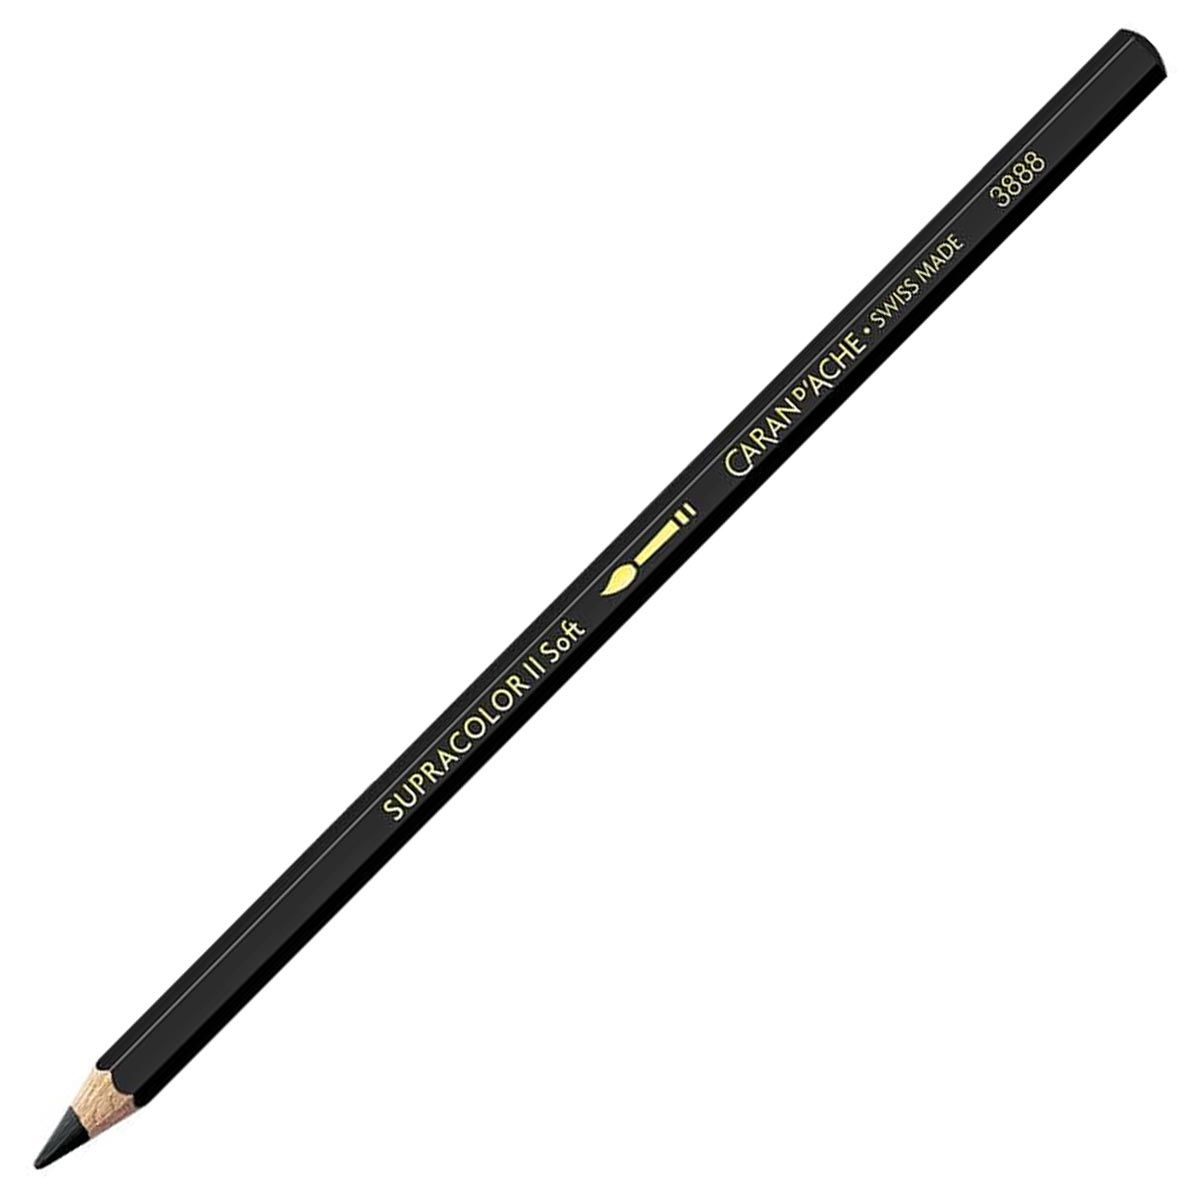 Caran d'Ache Supracolor ll Soft Aquarelle Pencil - Black 009